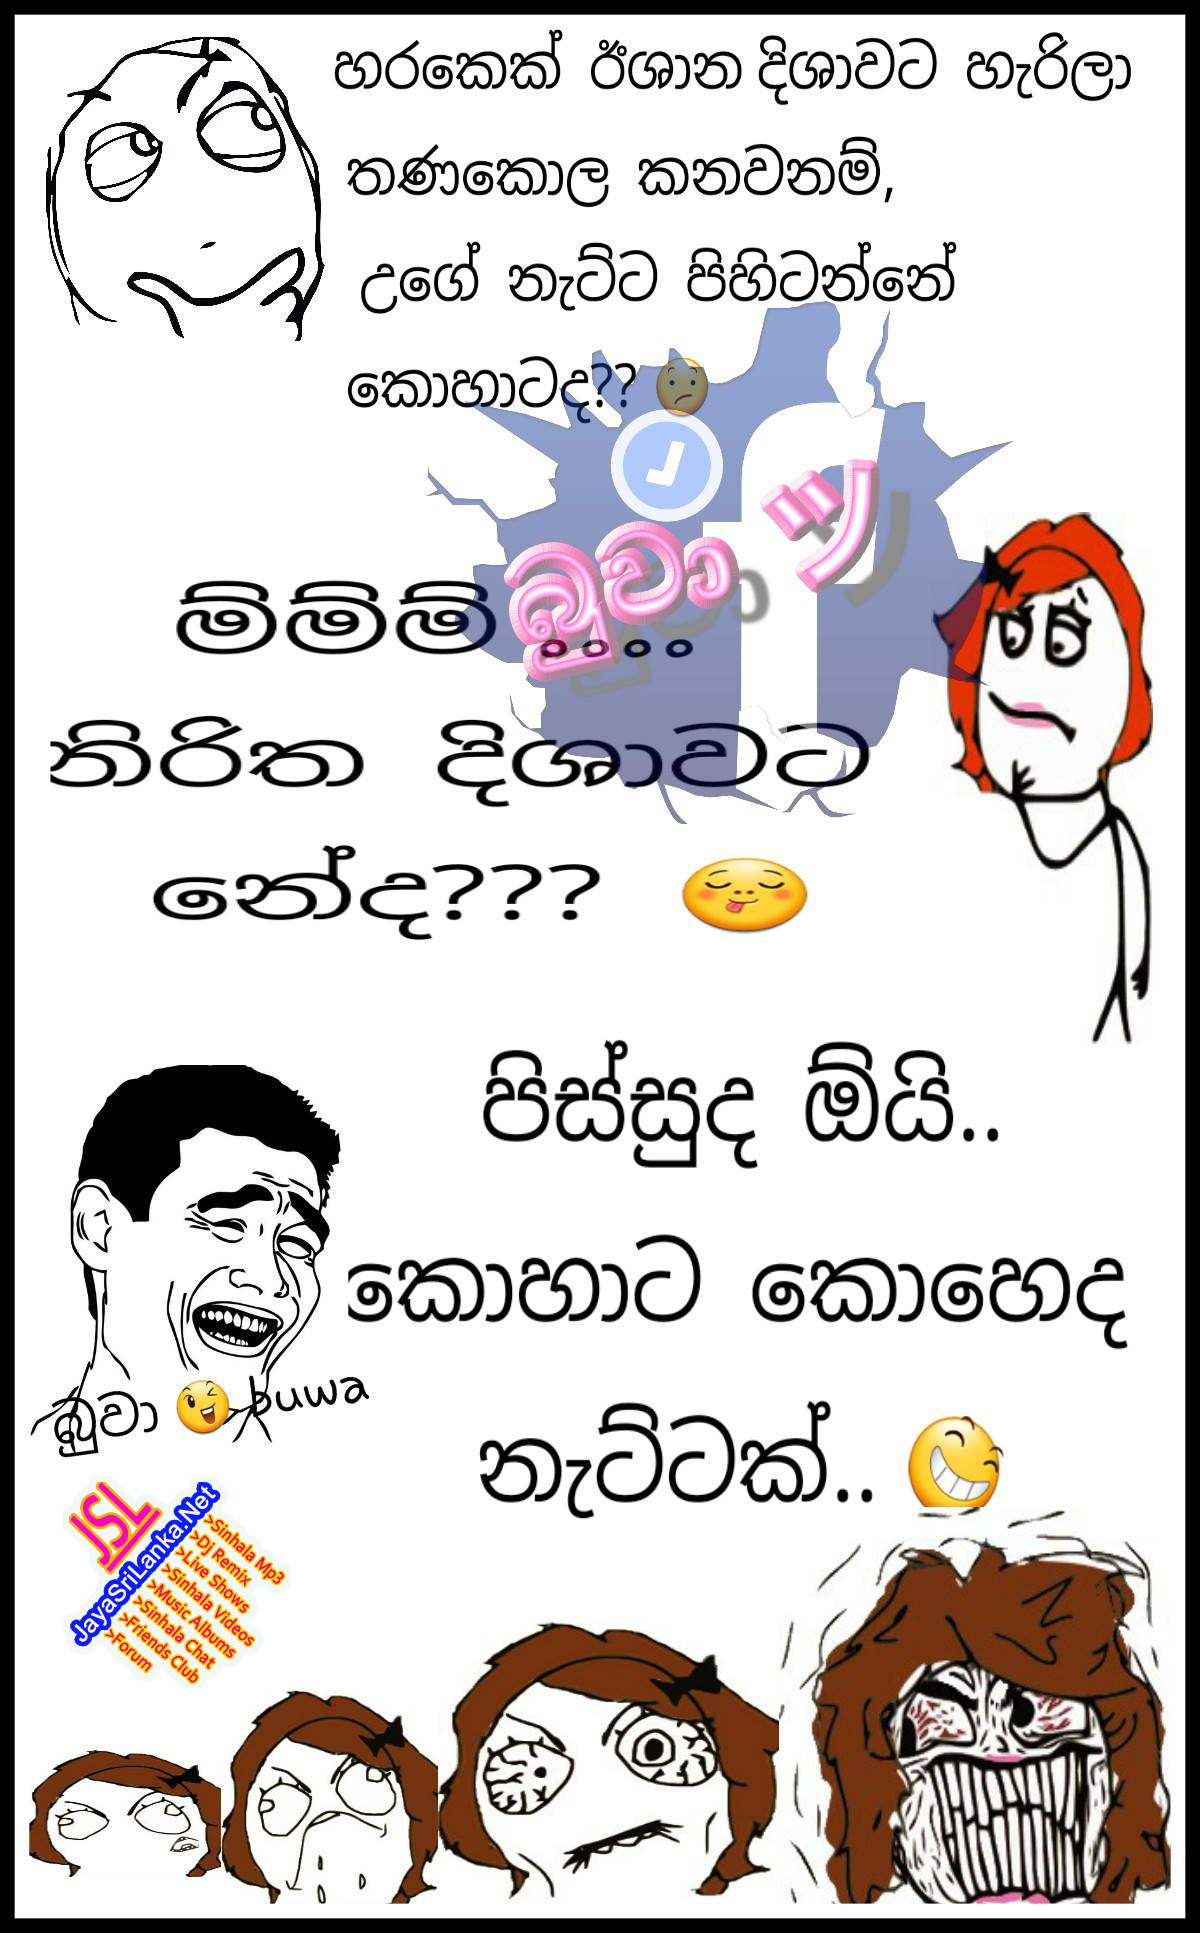 Sri Lanka Jokes The Best Sinhala Joke Web Site Welcome Induced Info